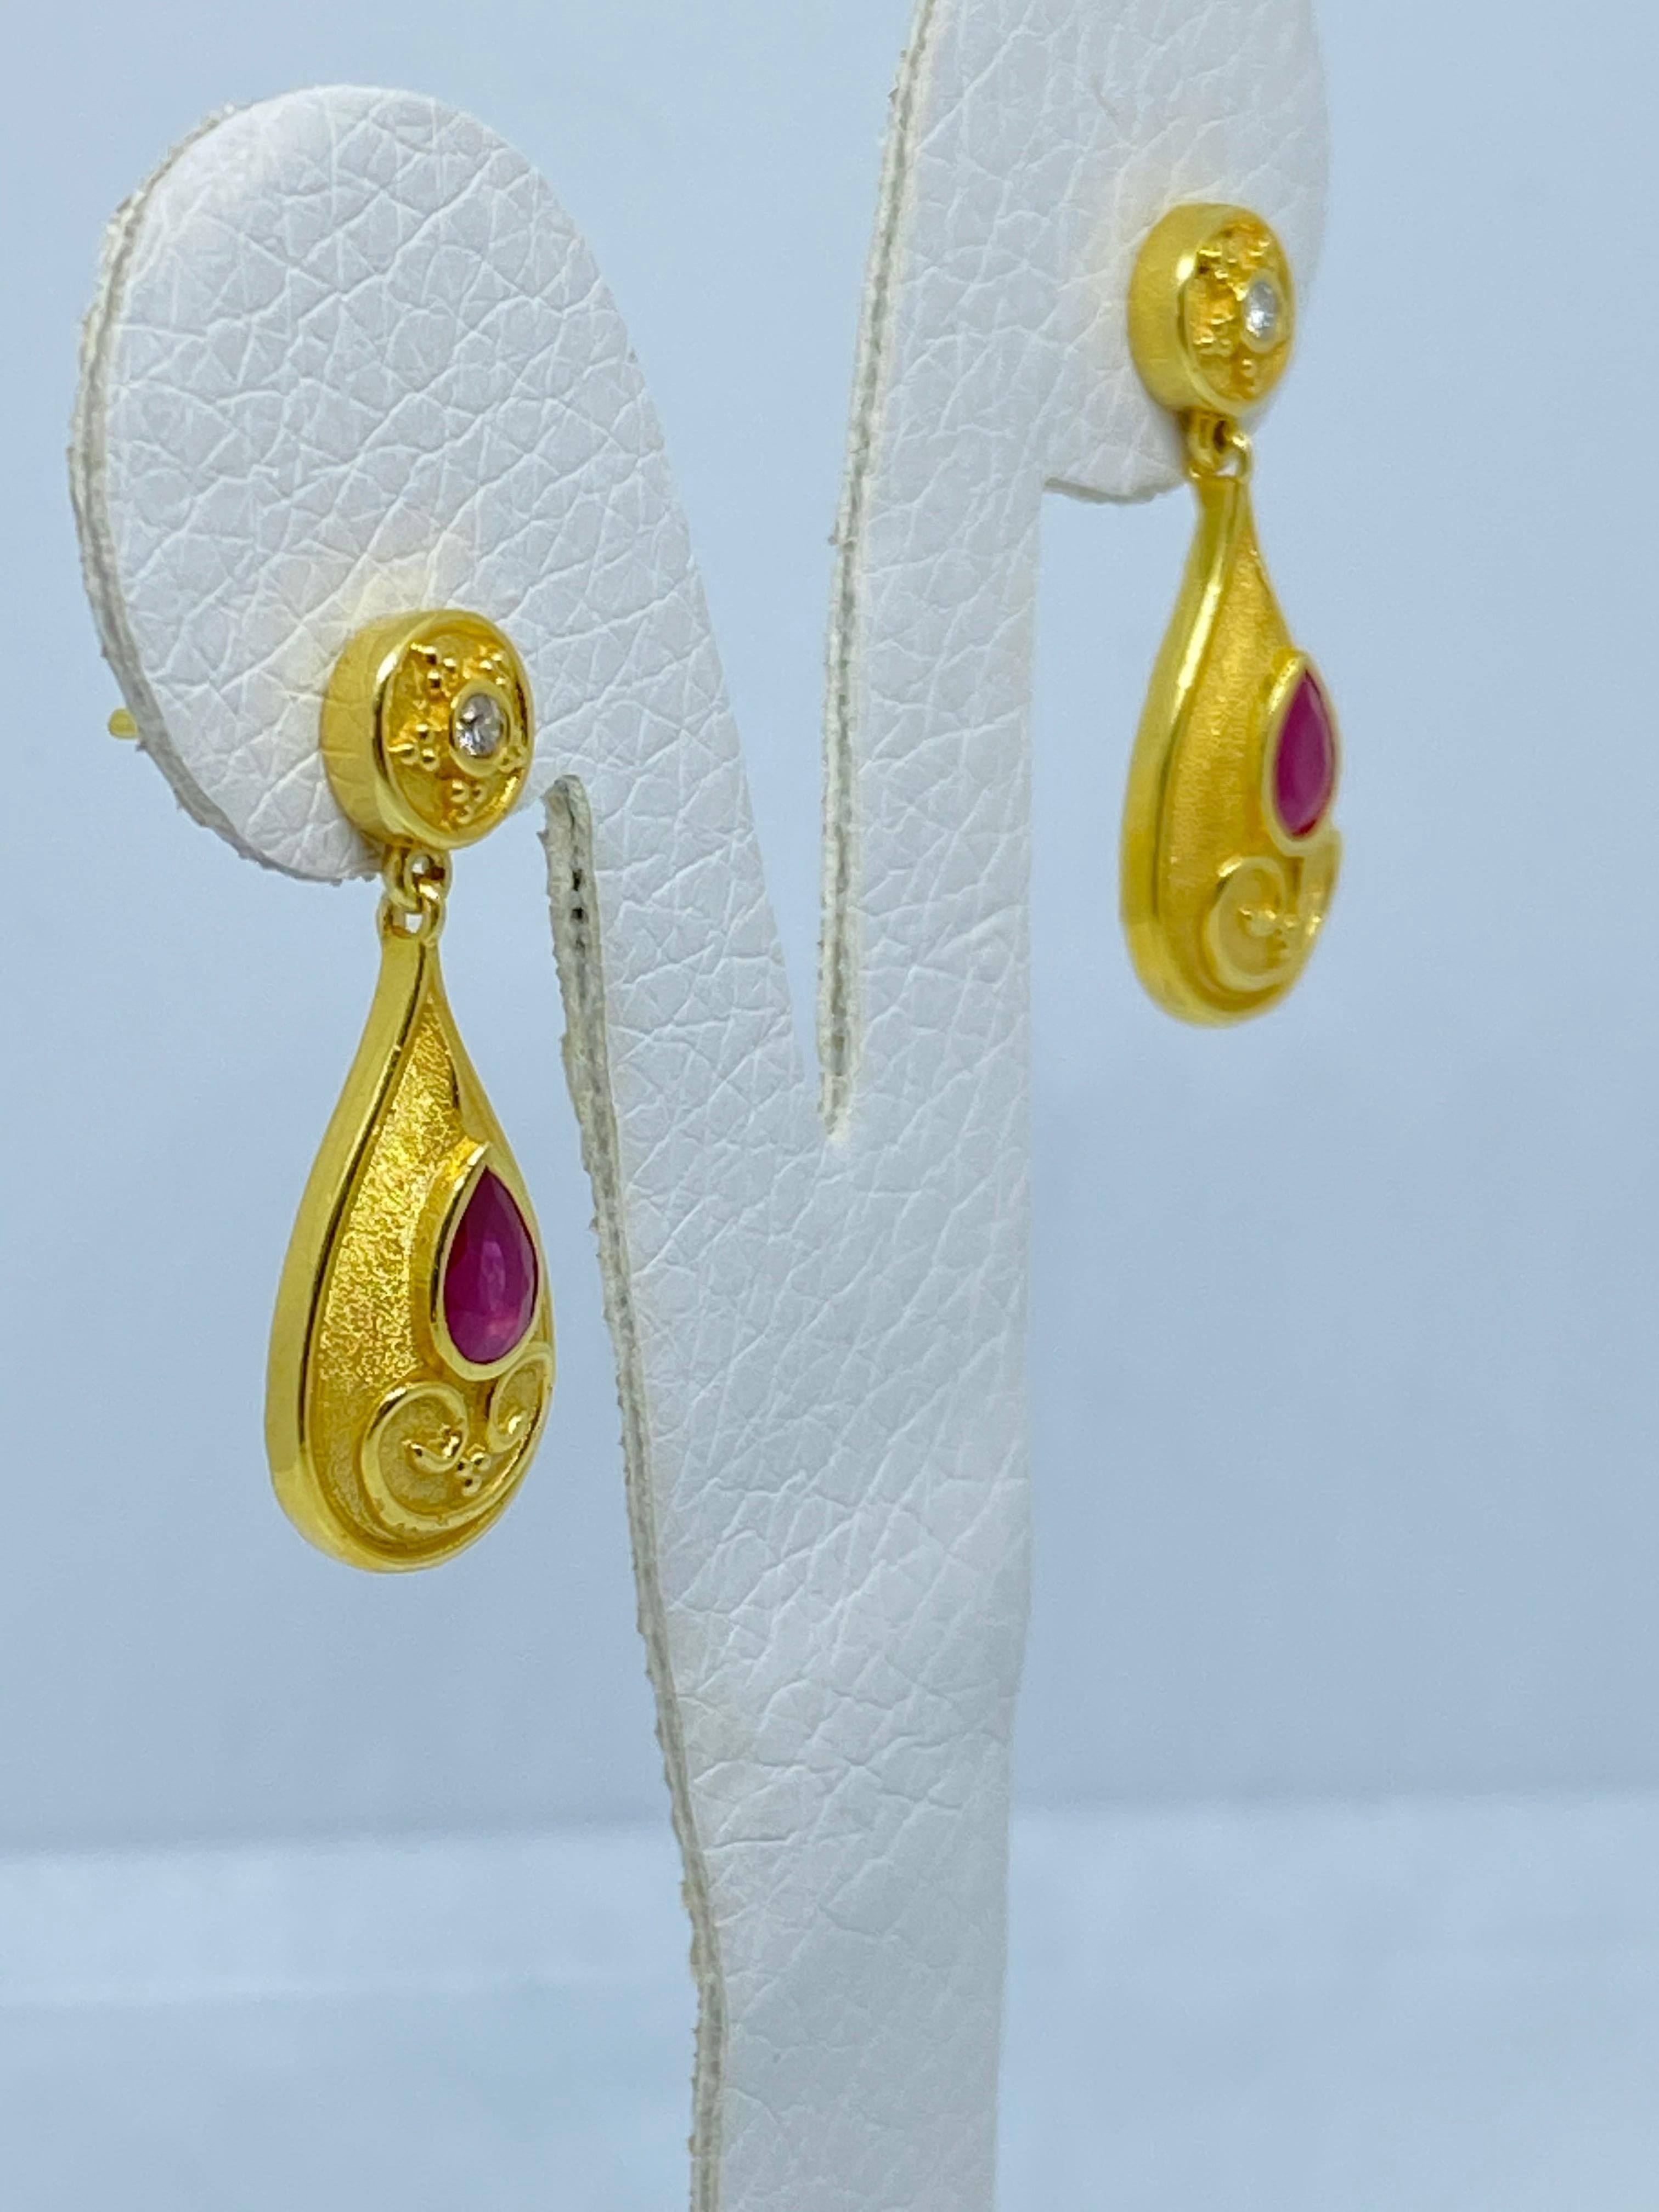 Diese Designer-Ohrringe von S.Georgios sind aus 18 Karat Gelbgold handgefertigt und mit einer Granulierung im byzantinischen Stil verziert. Diese wunderschönen Ohrringe bestehen aus 2 Diamanten im Brillantschliff mit einem Gesamtgewicht von 0,10